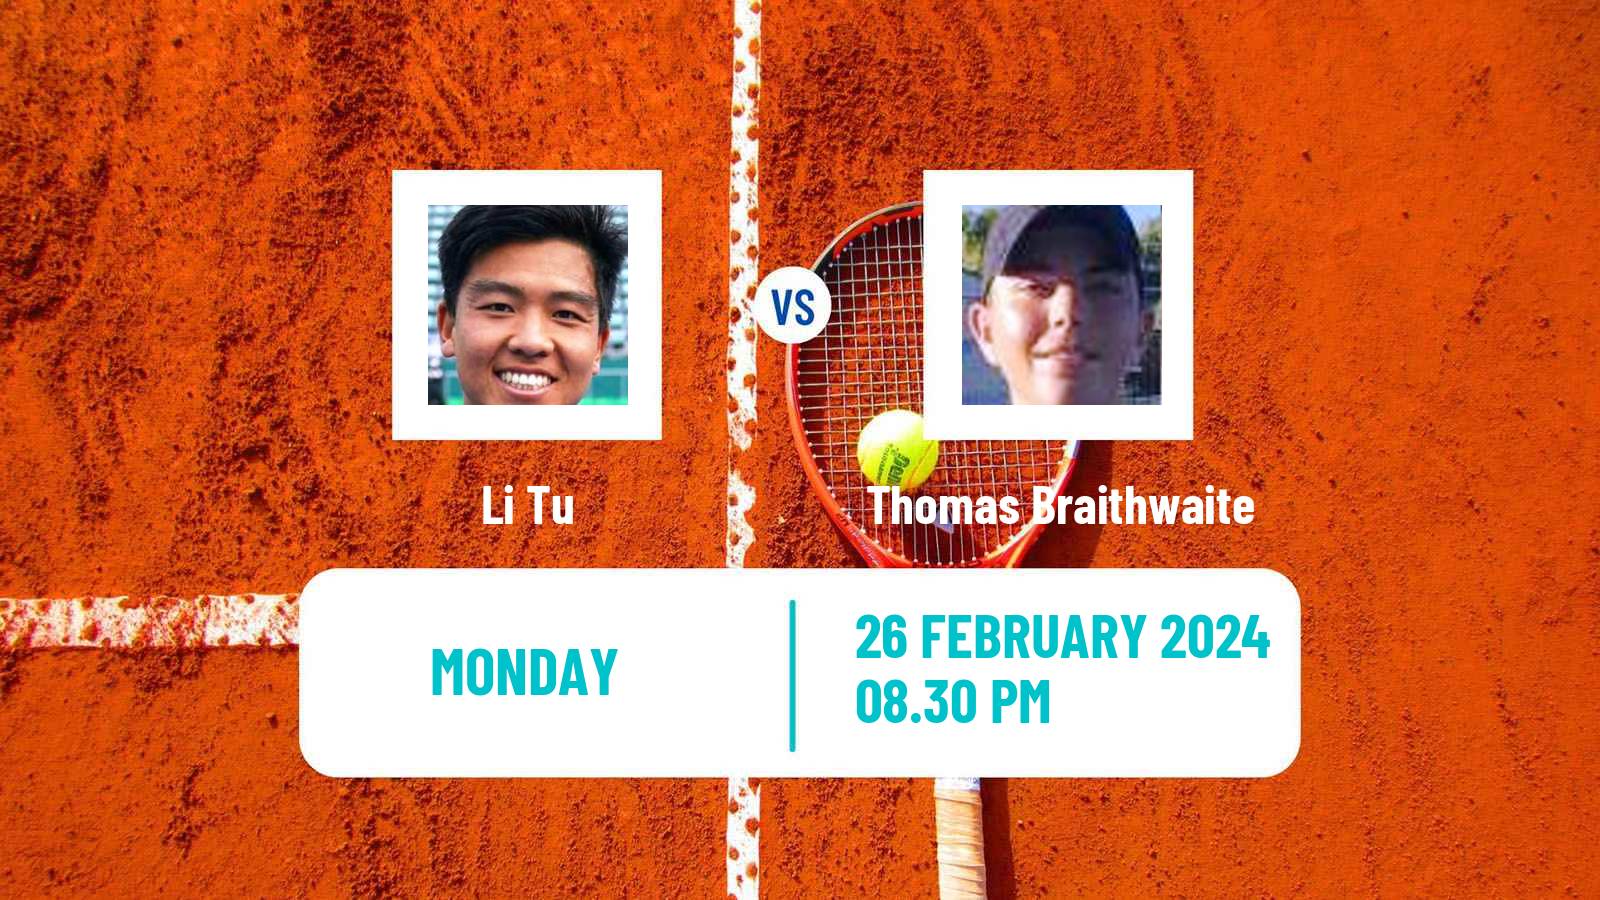 Tennis ITF M25 Traralgon 3 Men Li Tu - Thomas Braithwaite